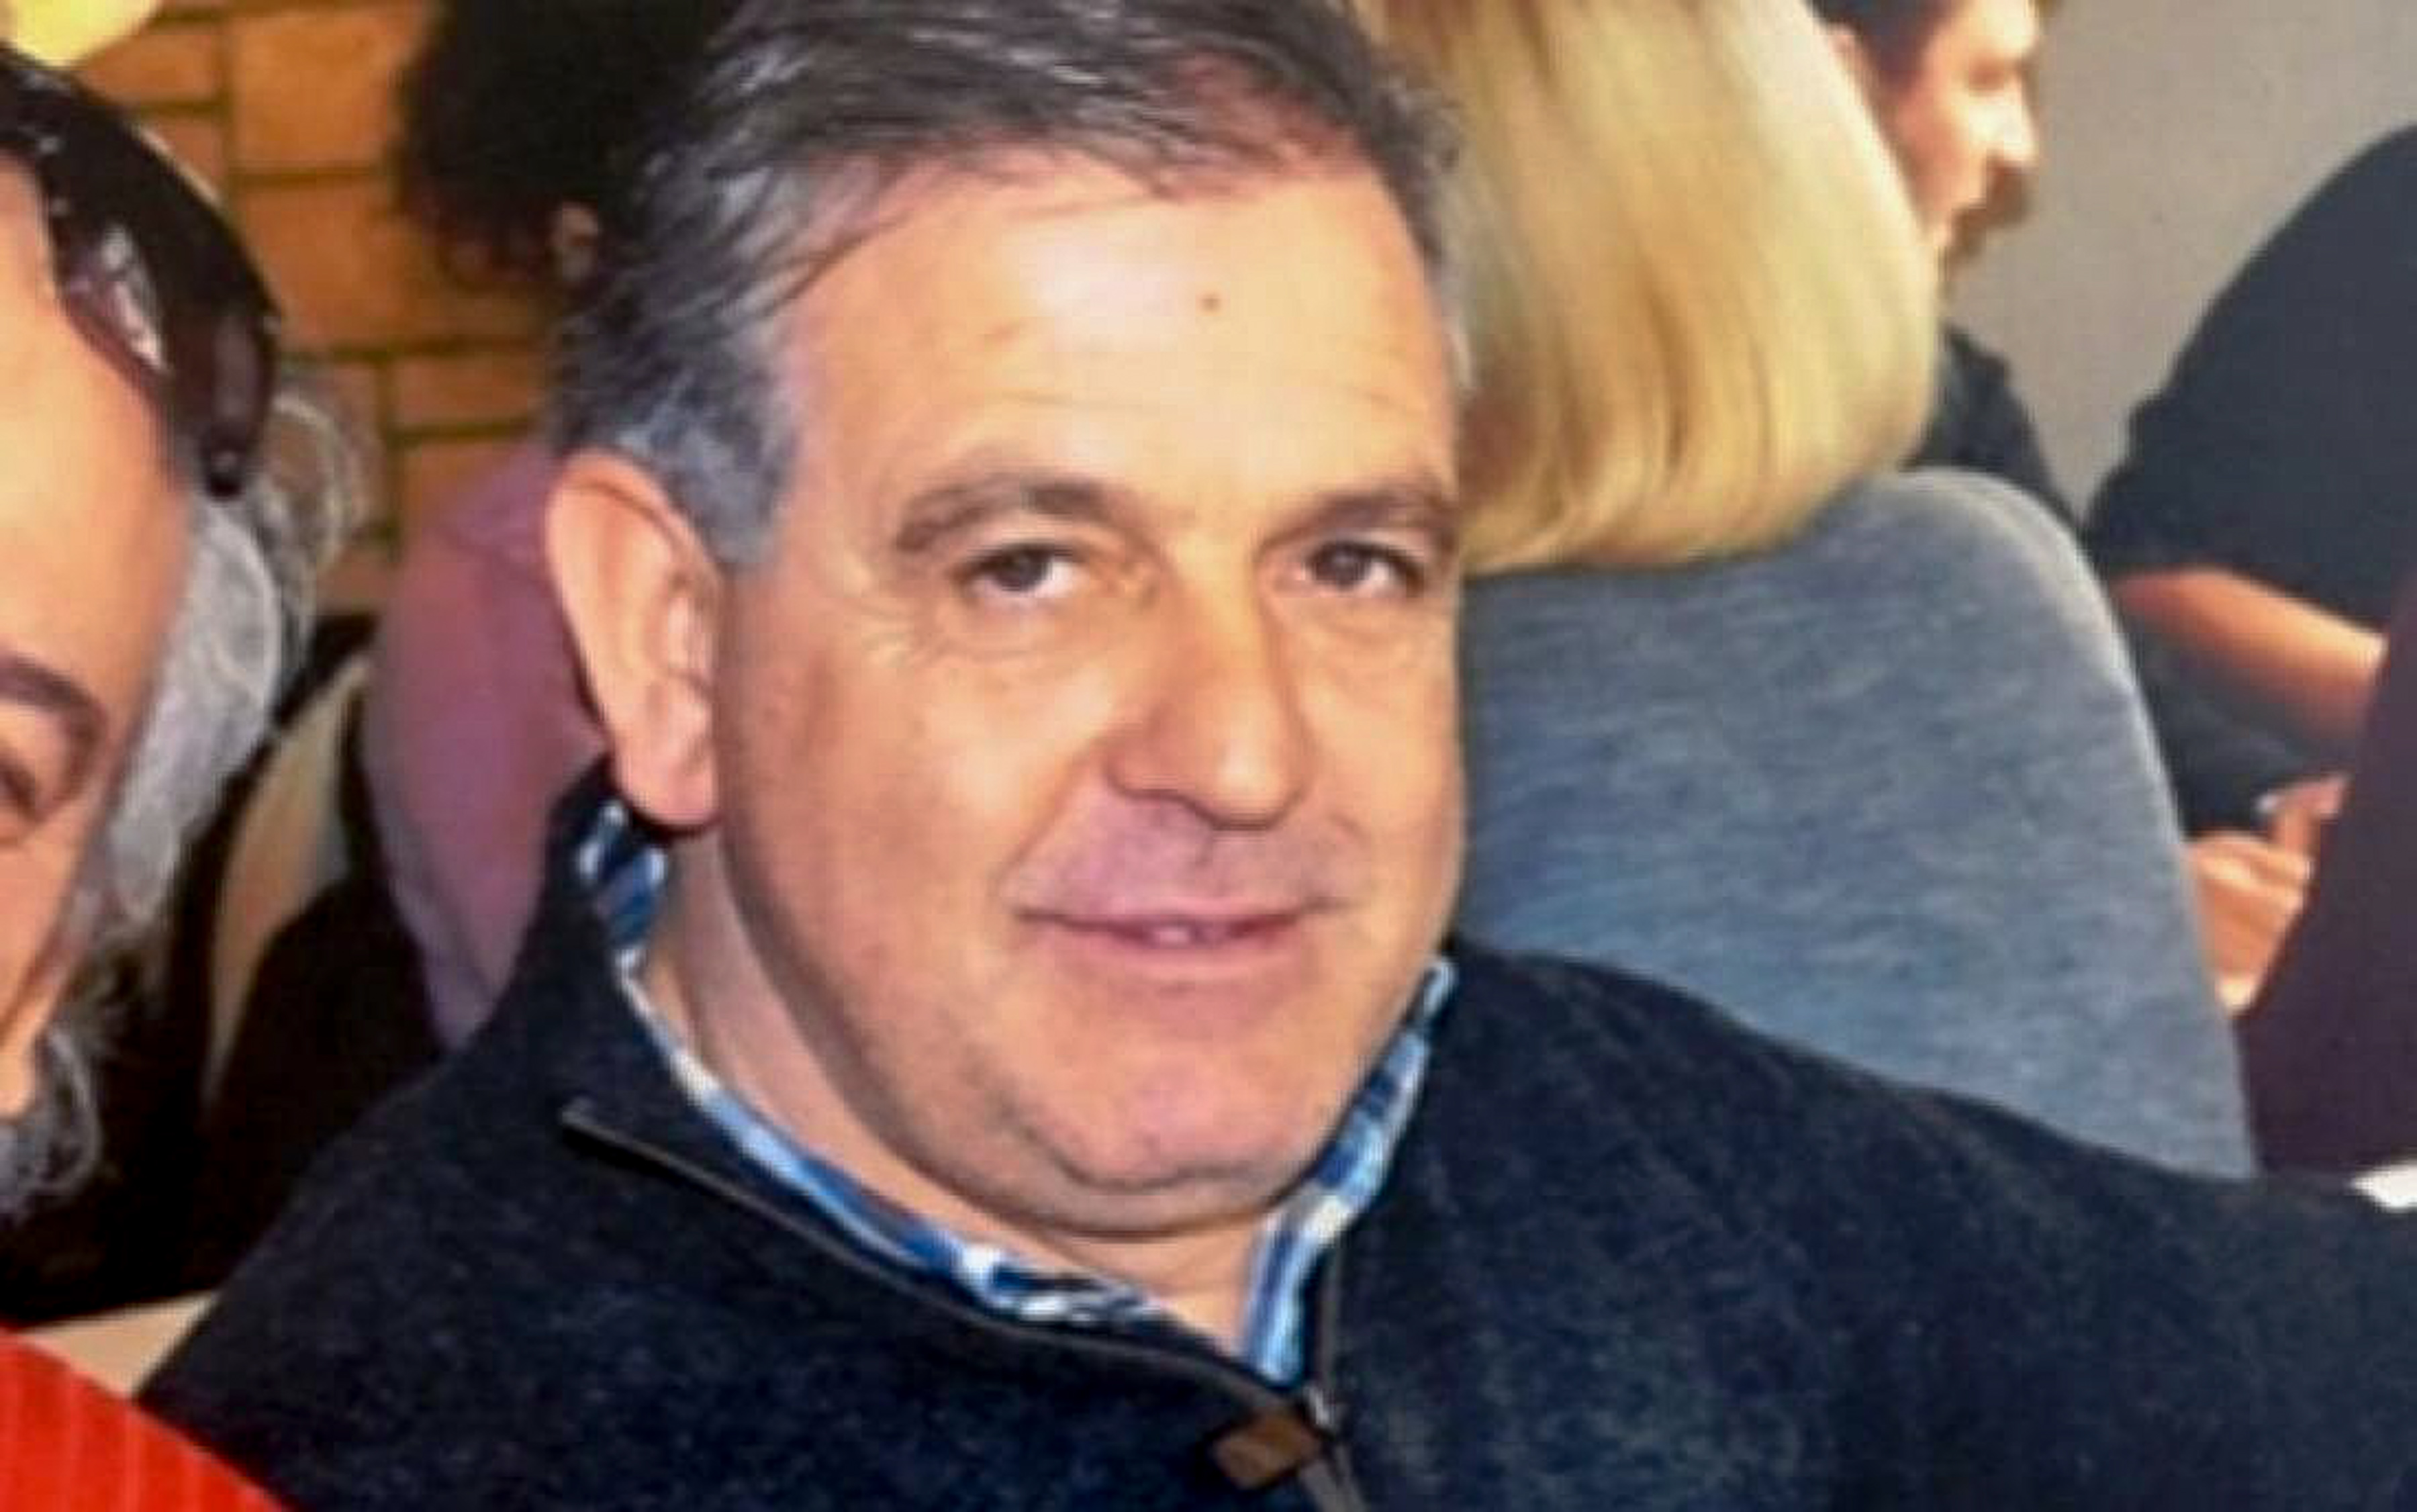 Δημήτρης Γραικός: «Ήταν ανοησία που δεν ειδοποίησα κάποιον» είπε στη δίκη ο κατηγορούμενος για τη δολοφονία